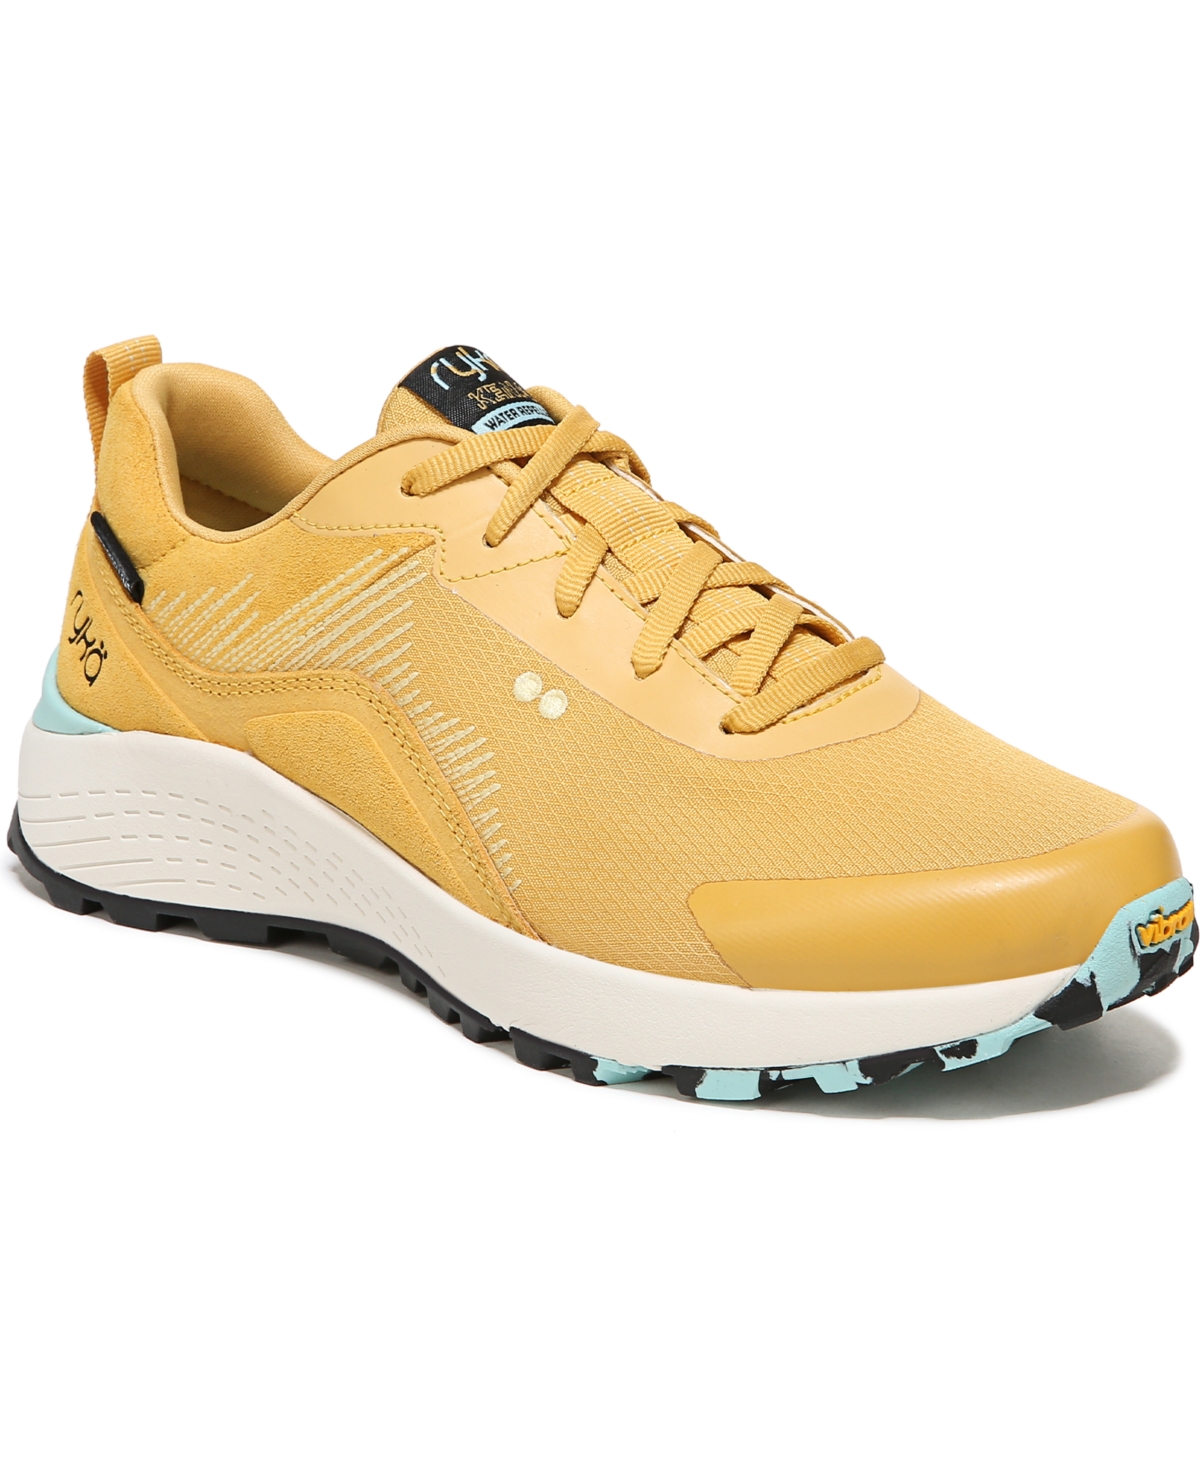 Women's Kenai Trail Sneakers - Yellow Fabric/Suede